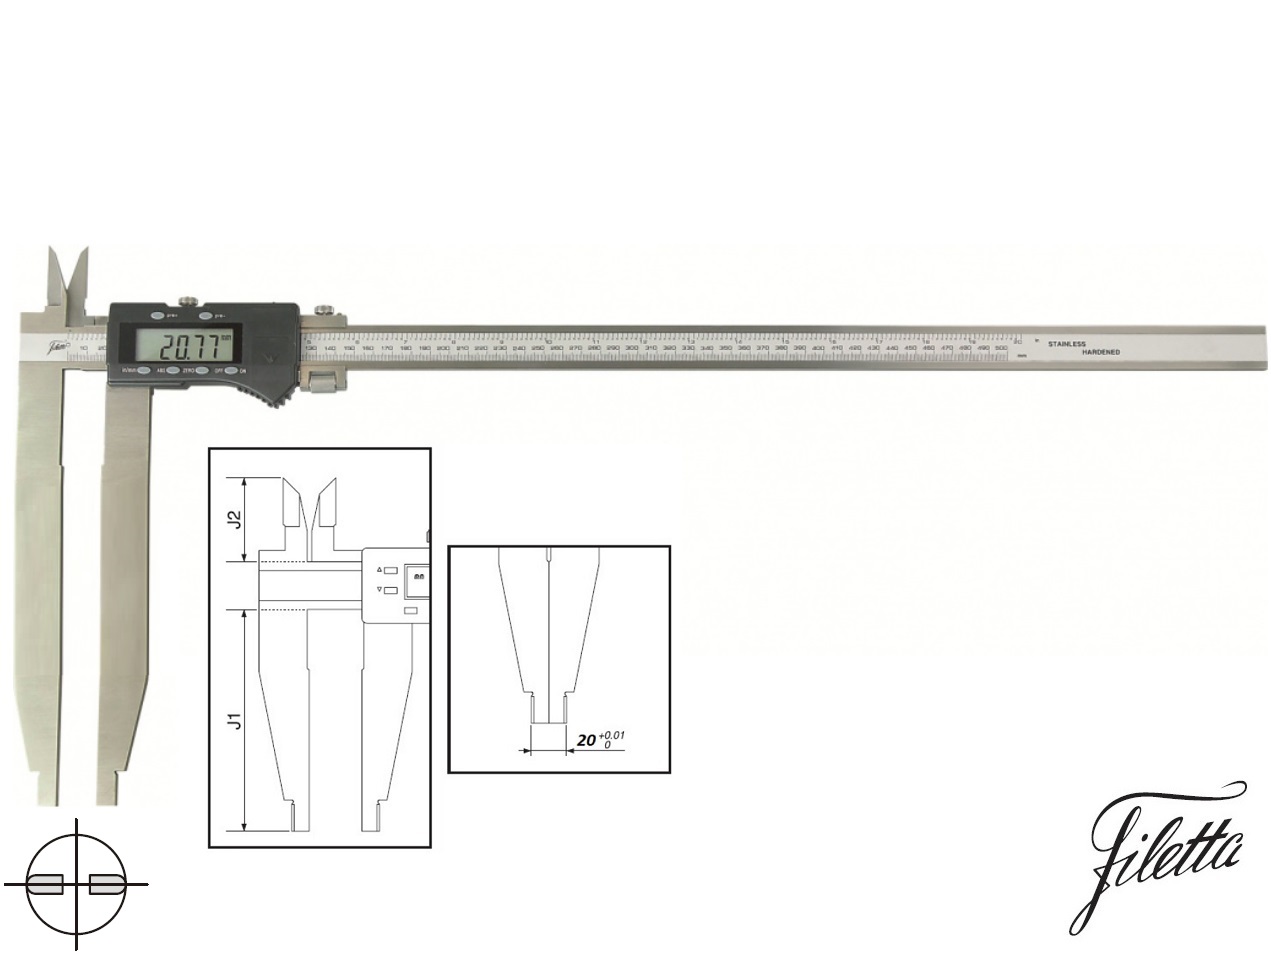 Digitální posuvné měřítko Filetta 0-500/250 mm s měřicími nožíky pro vnitřní měření